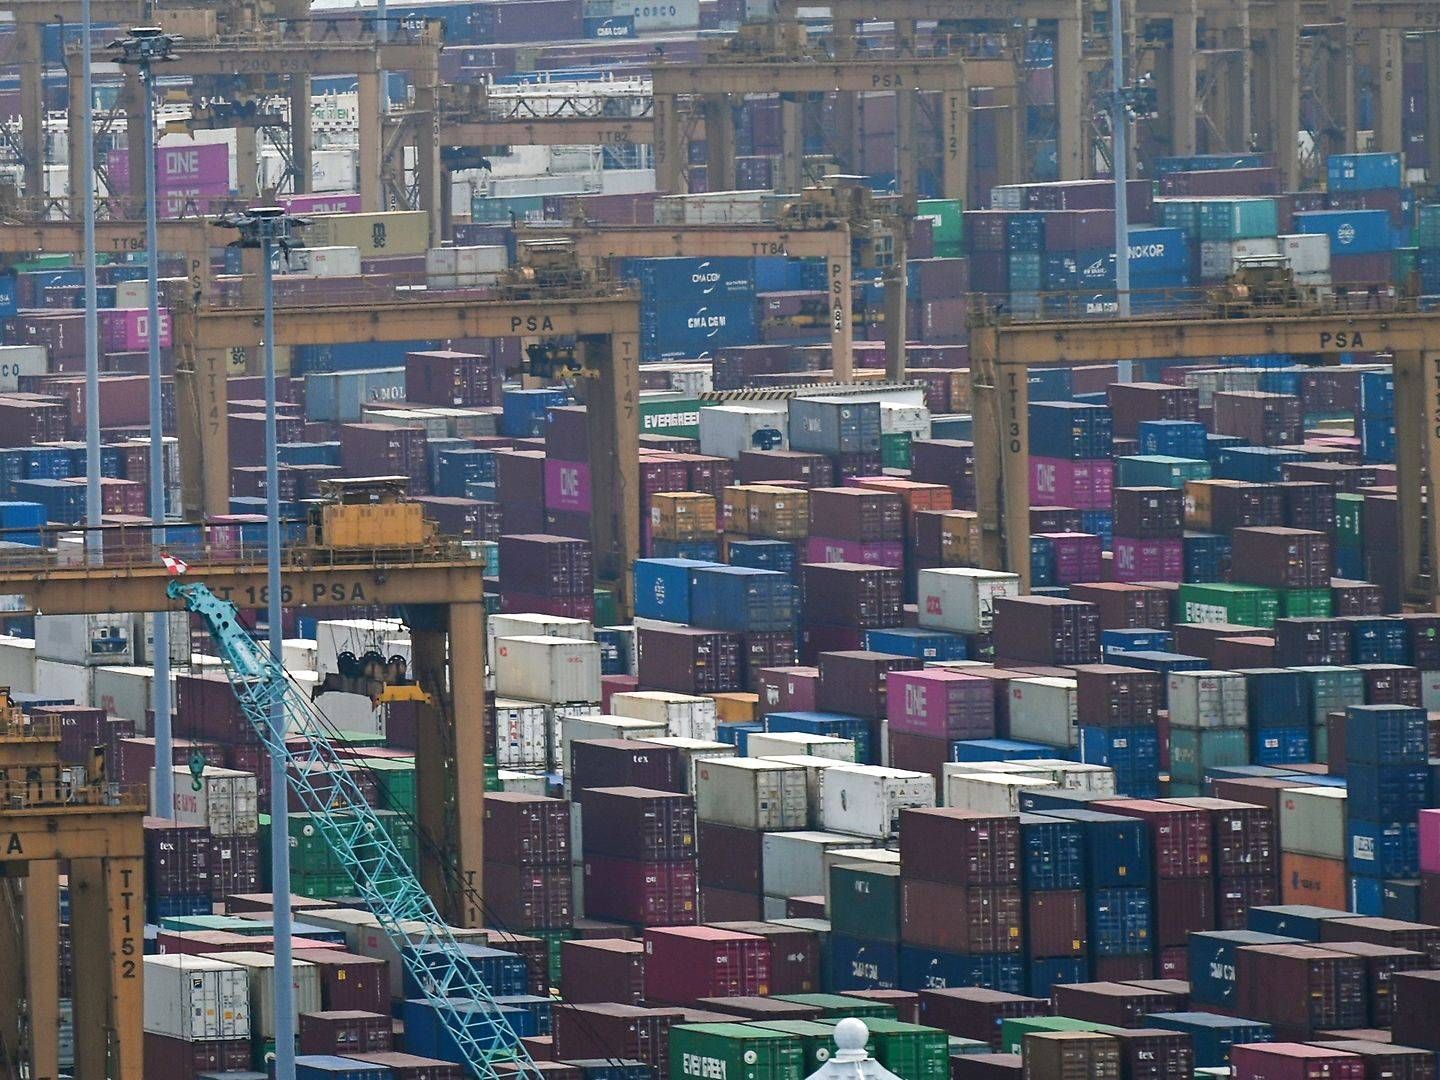 Containere på havnen i Singapore. | Foto: Roslan Rahman/AFP/Ritzau Scanpix